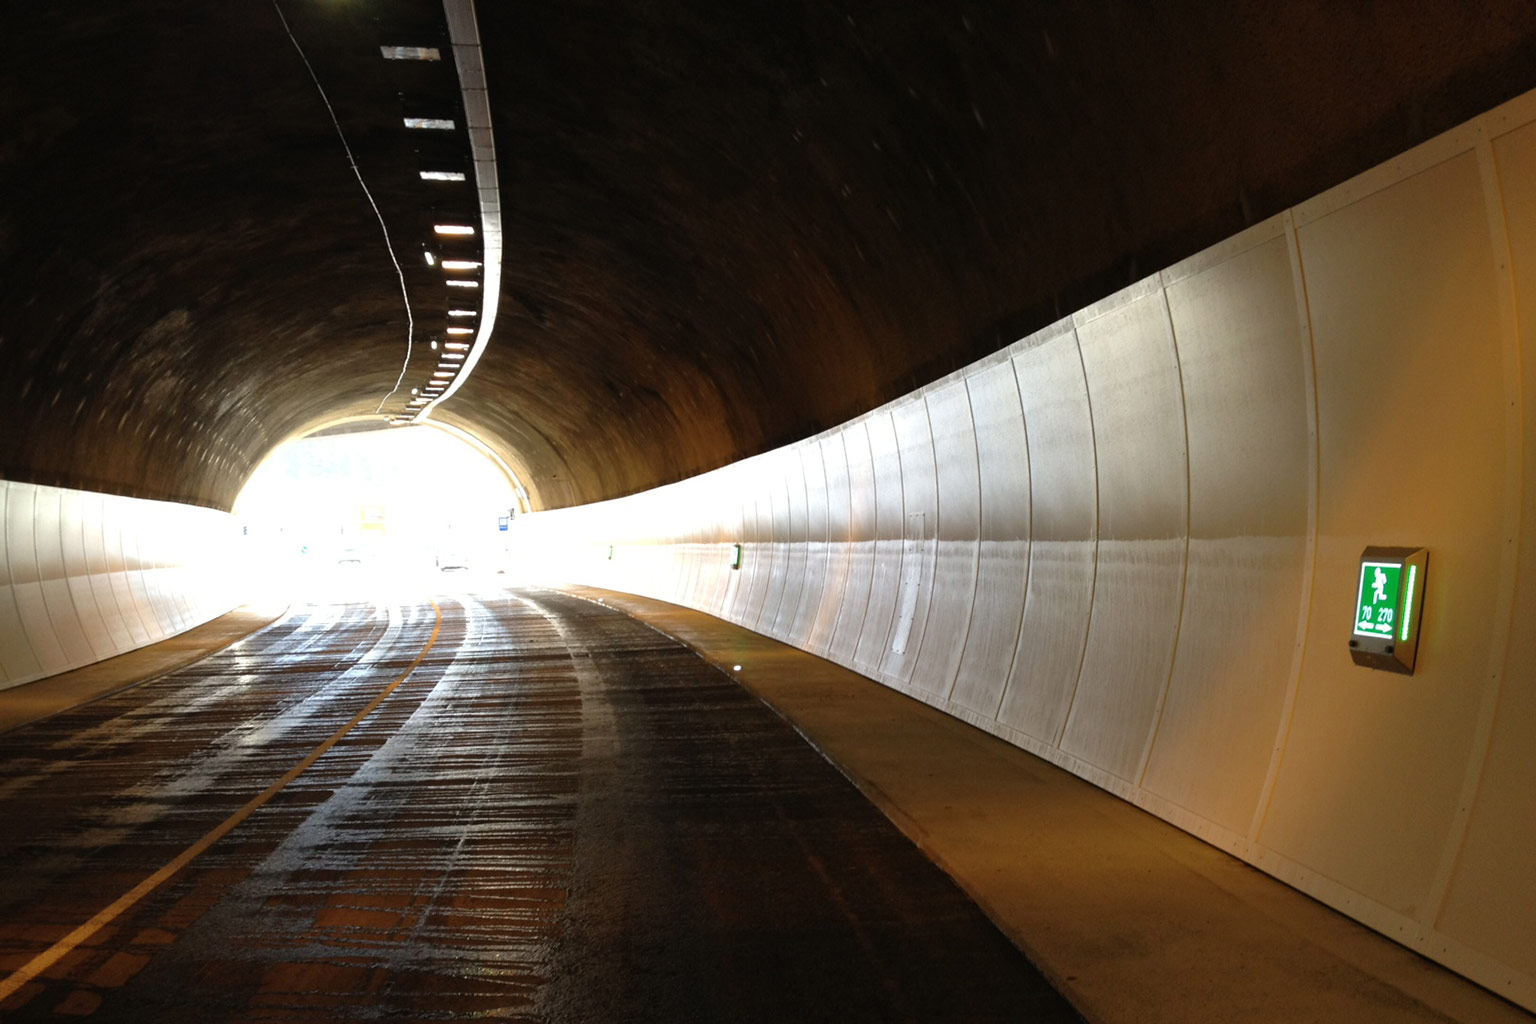 Lämmerbuckel Tunnel